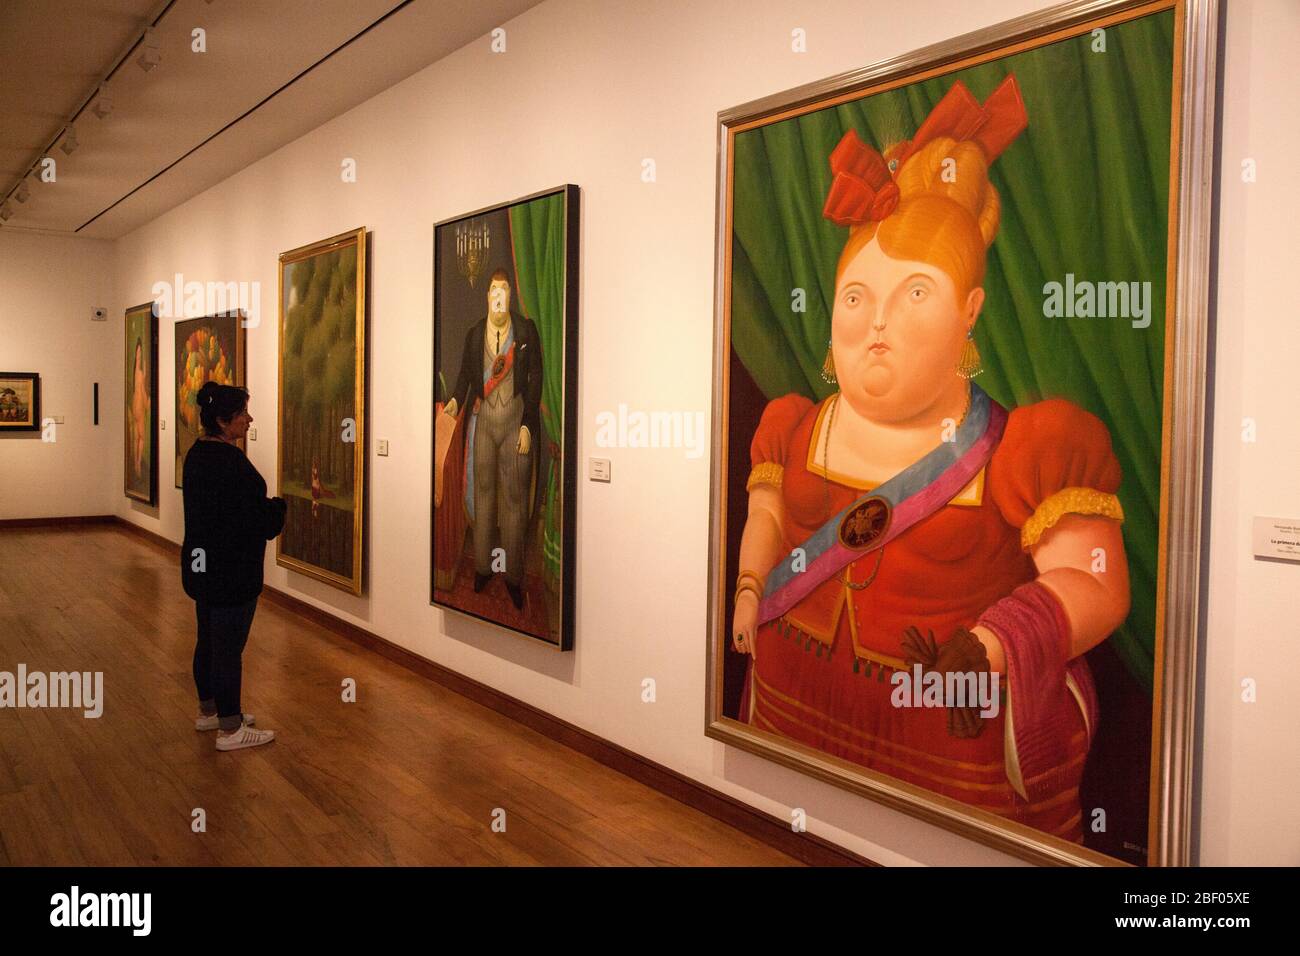 Admiradores admirando la primera dama, pintura de Botero en una galería del Museo Botero, también conocido como Museo Botero, Bogotá, Colombia Foto de stock